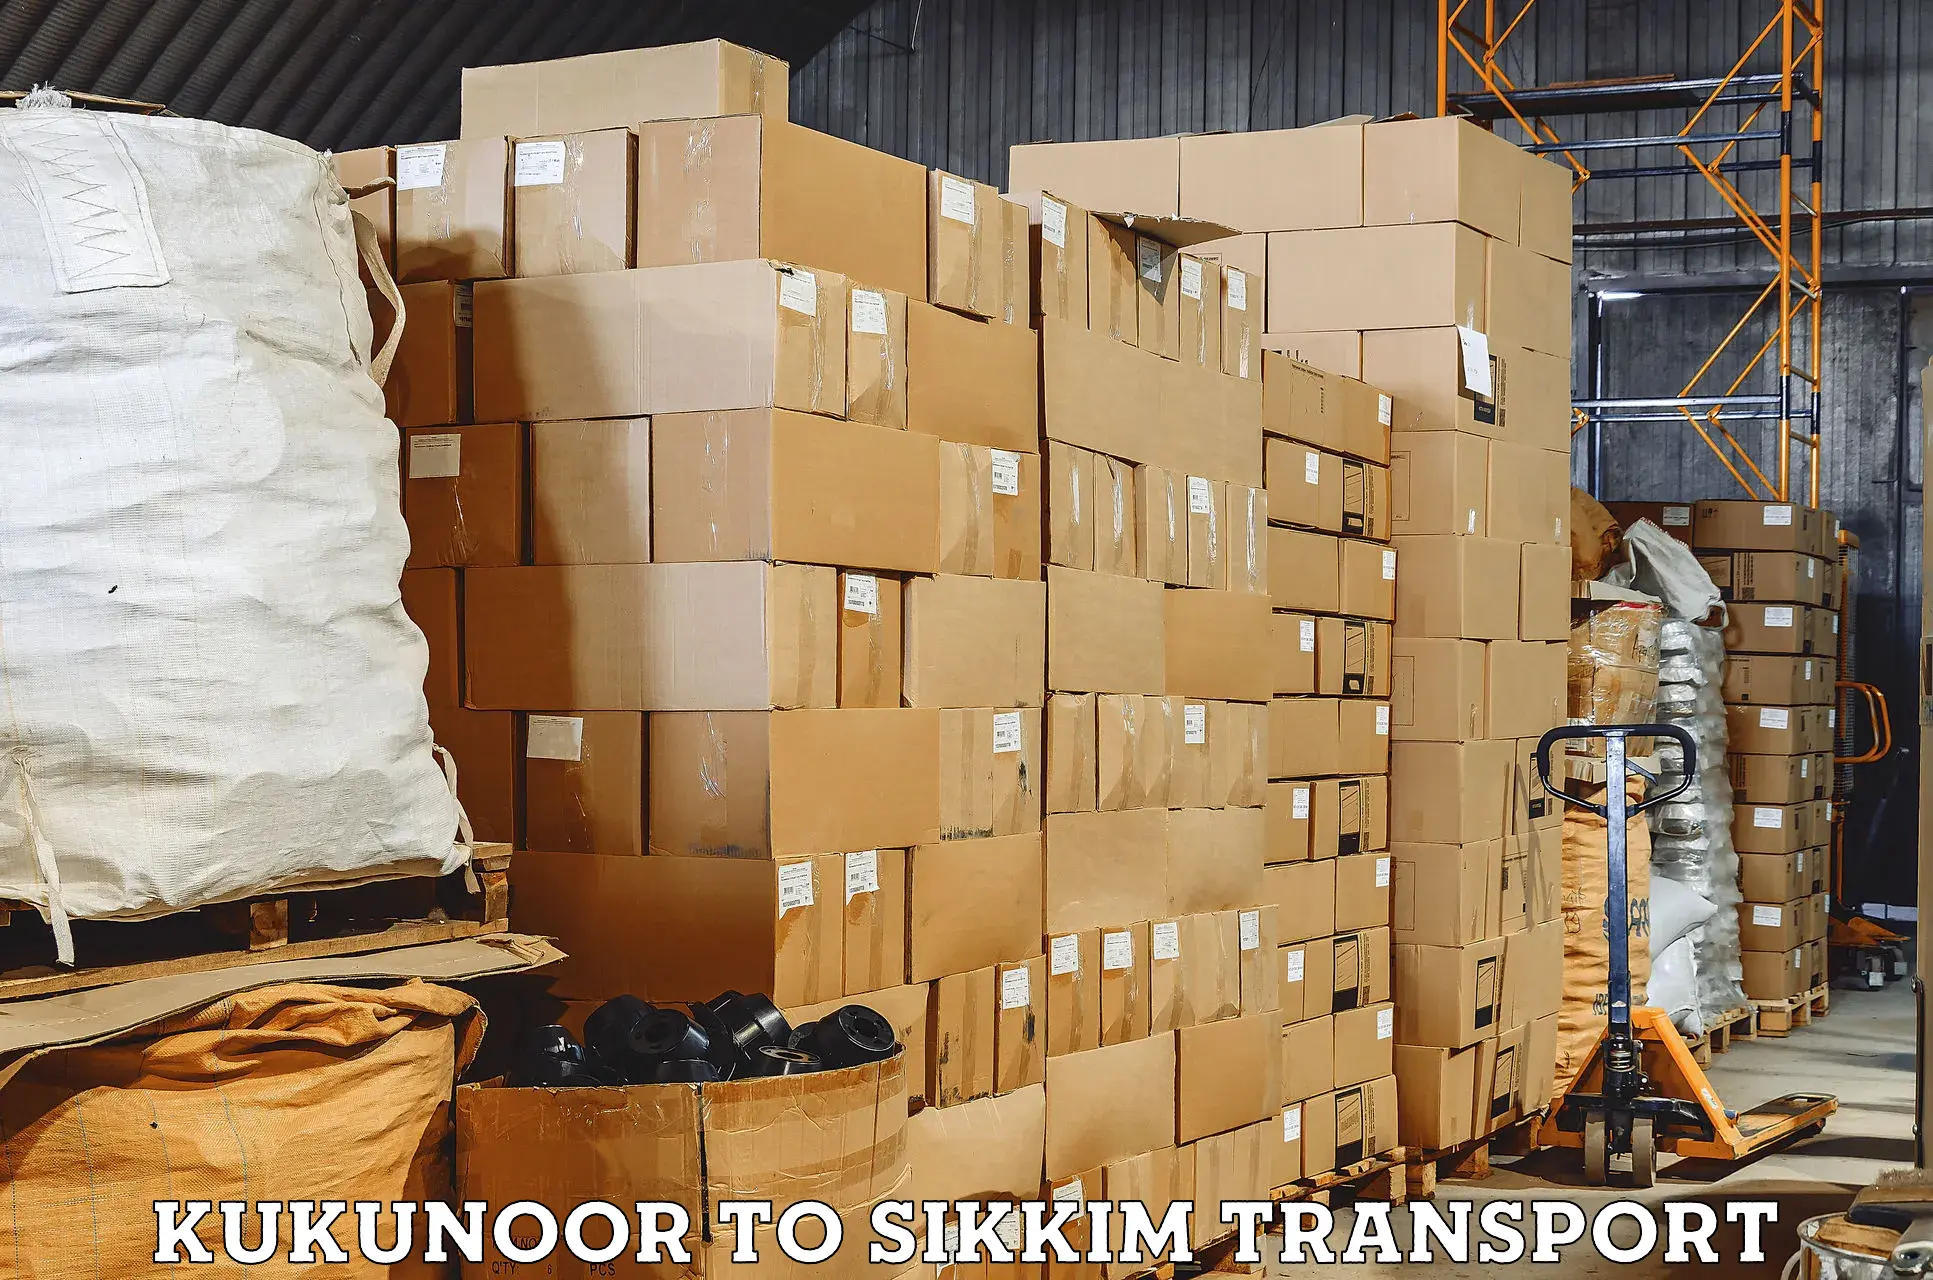 Road transport online services Kukunoor to East Sikkim